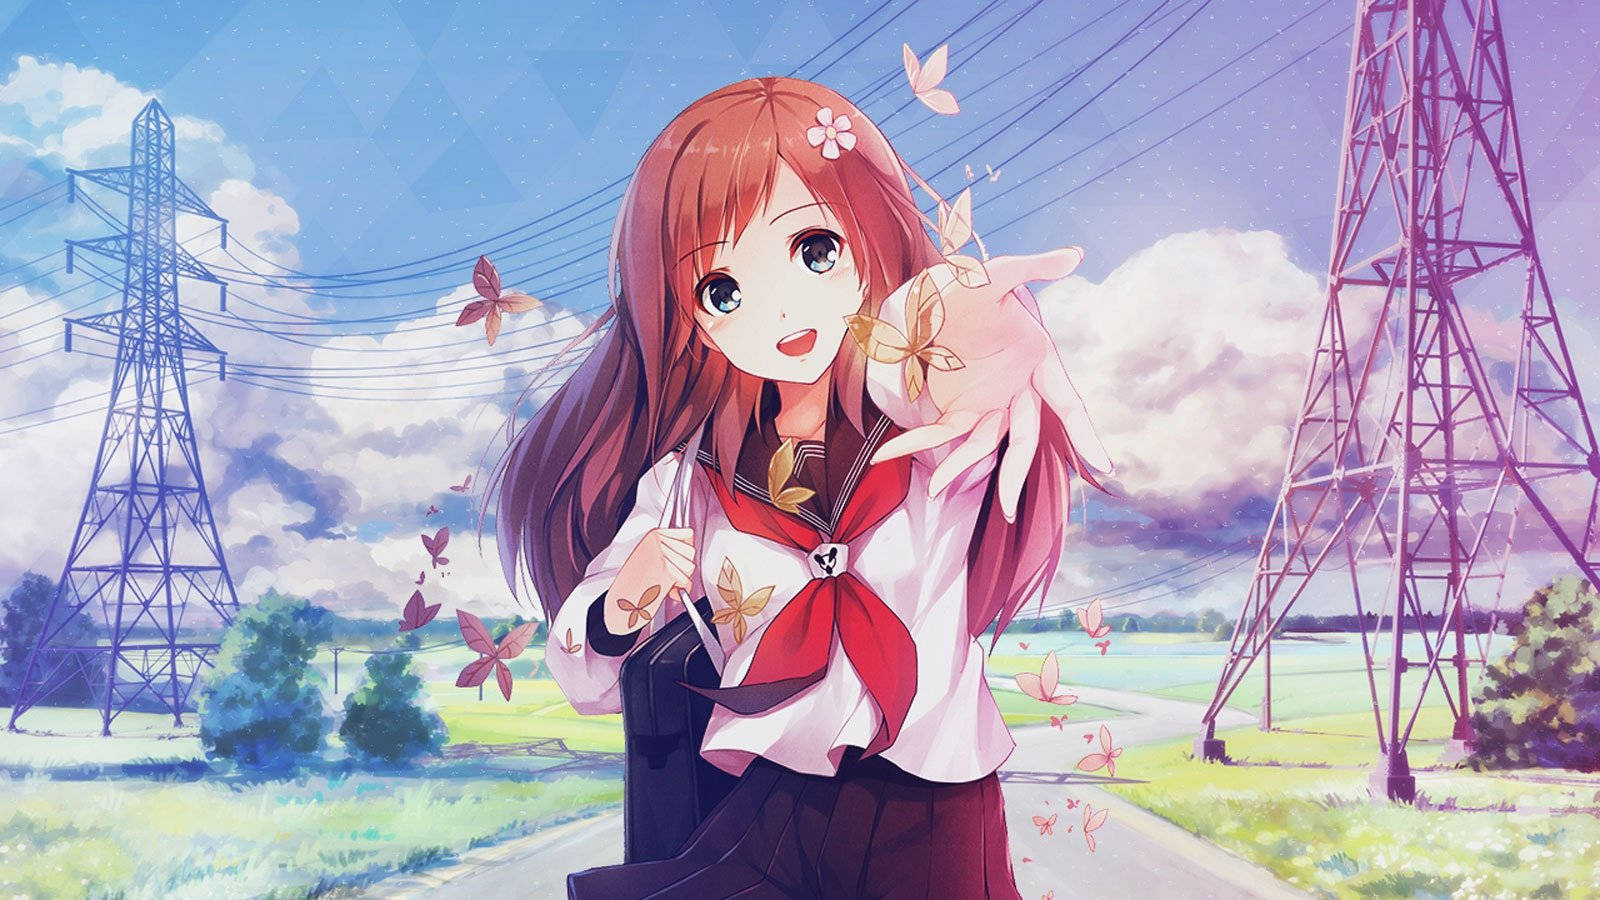 Sweet Anime Girl Full Hd 1600x900 Wallpaper